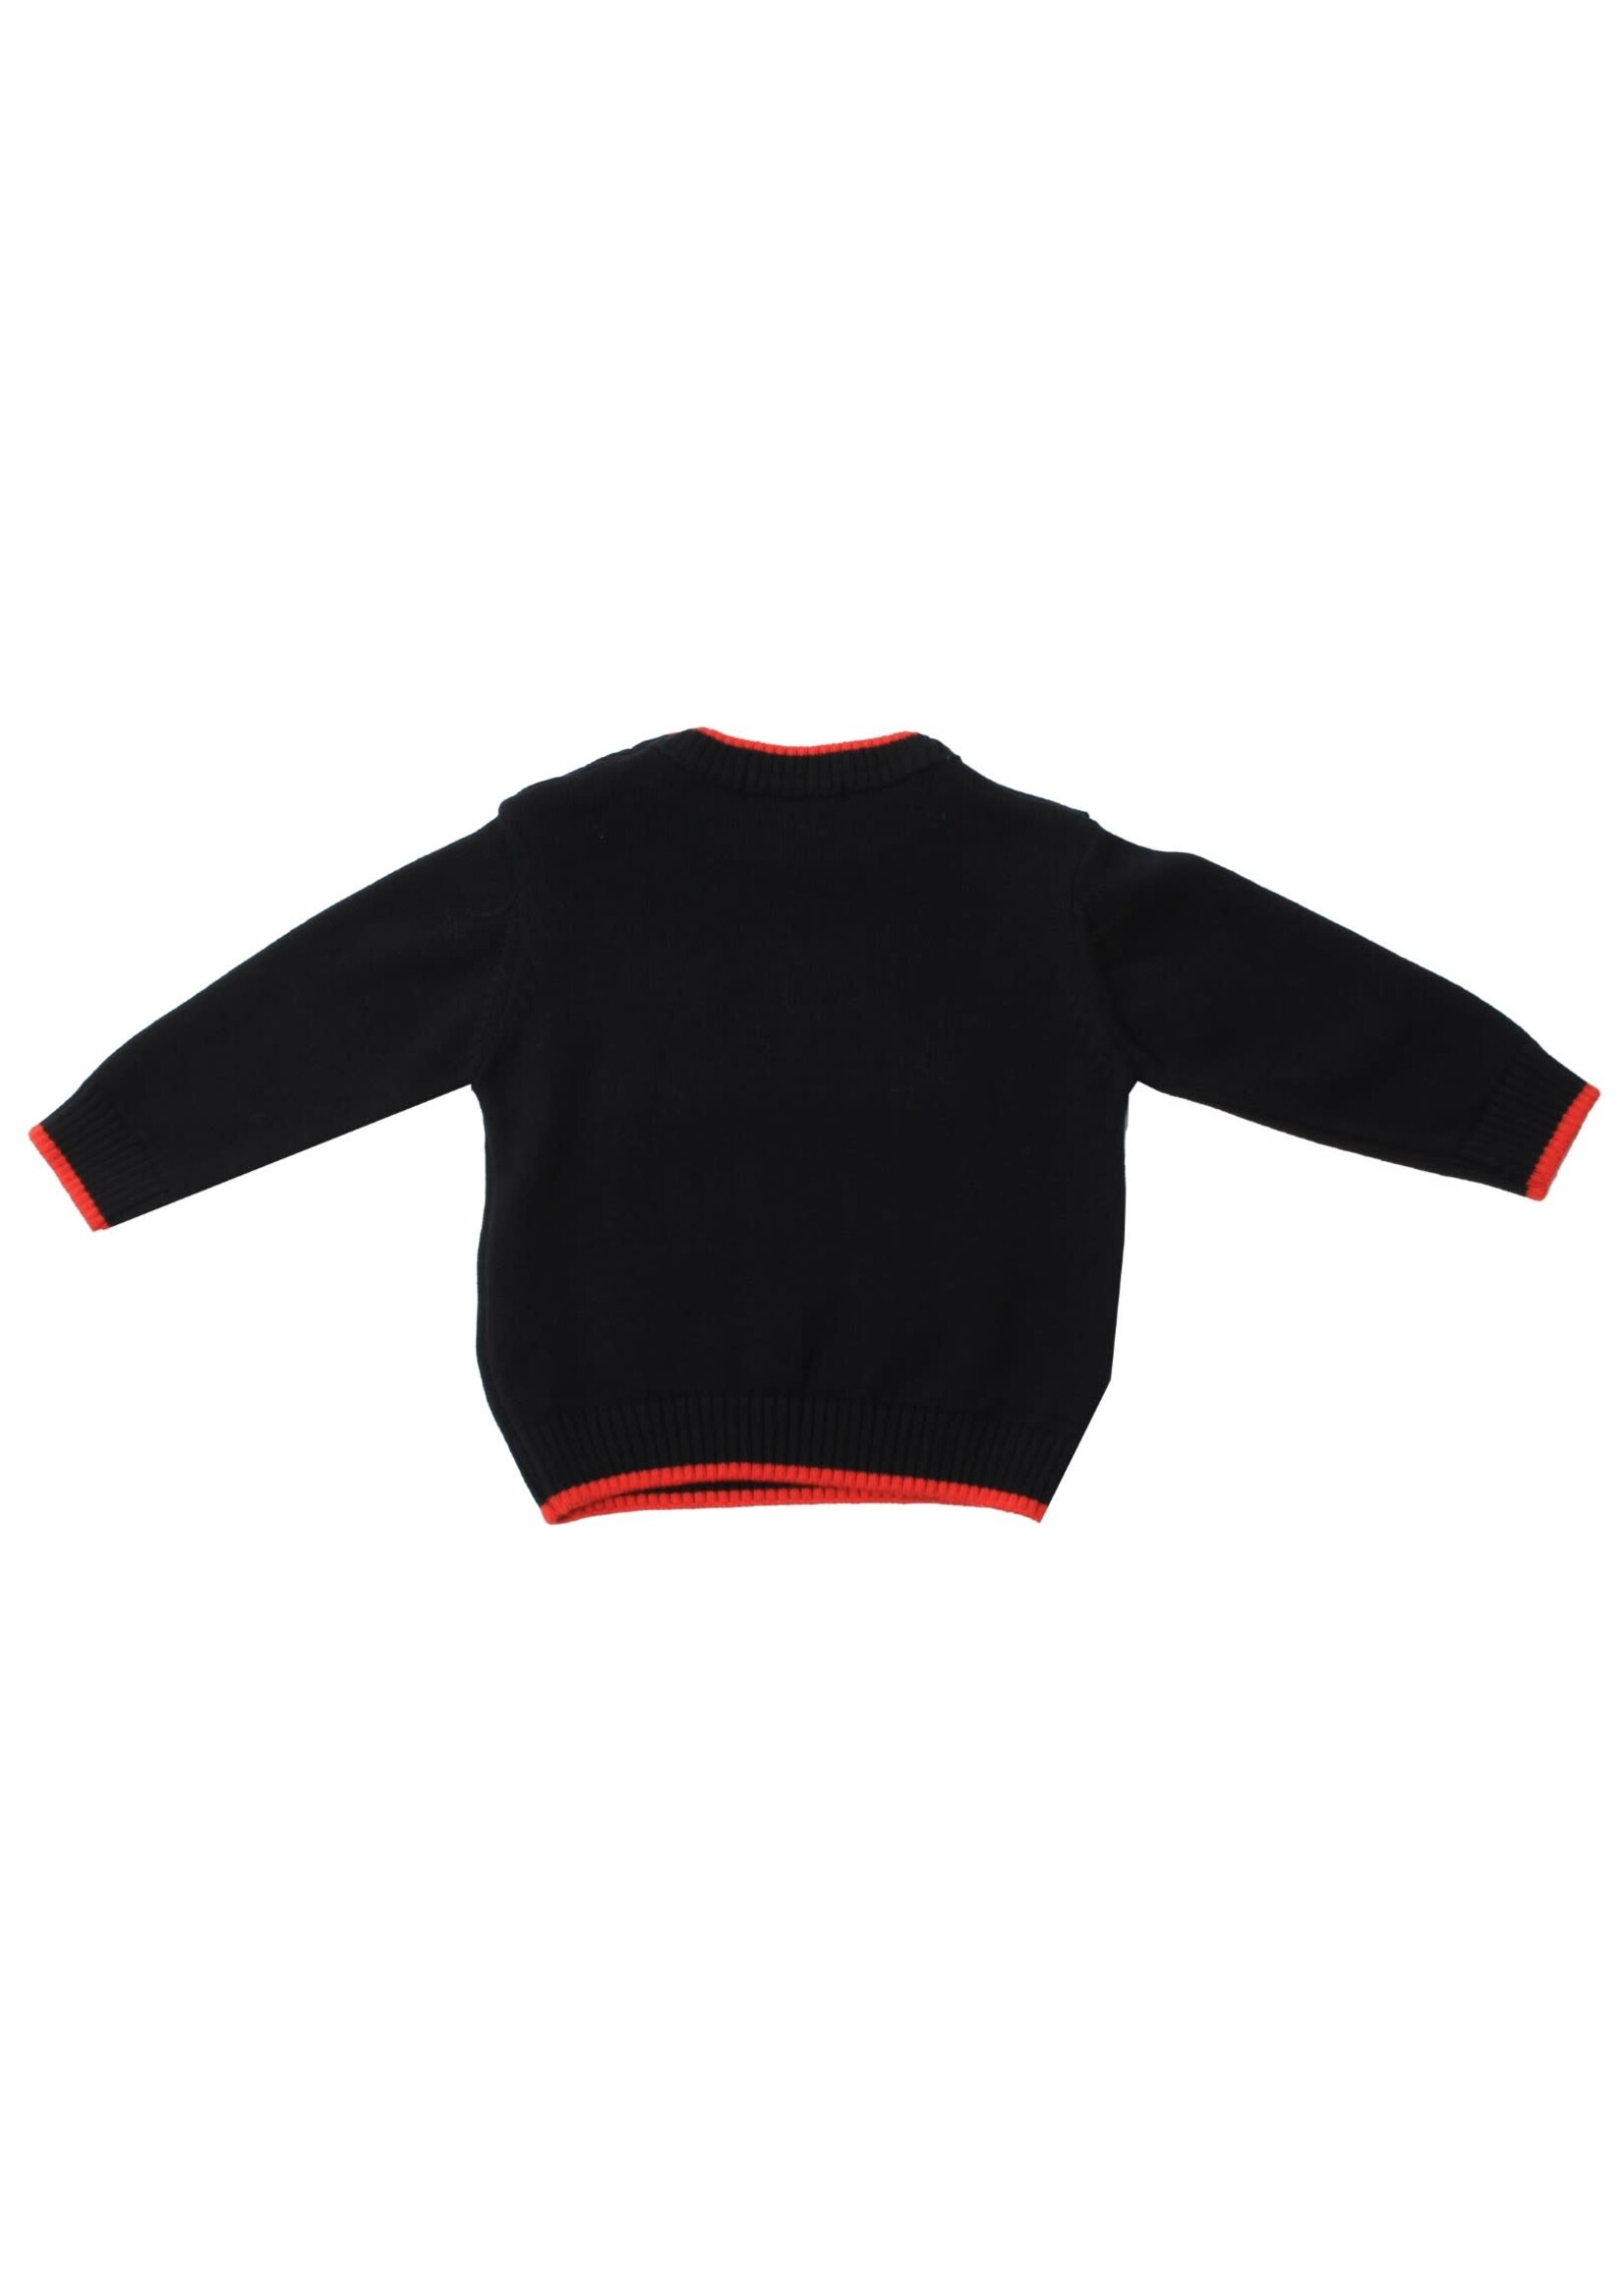 Dr Kid Baby Boy Sweater 280-Marinho-DK512